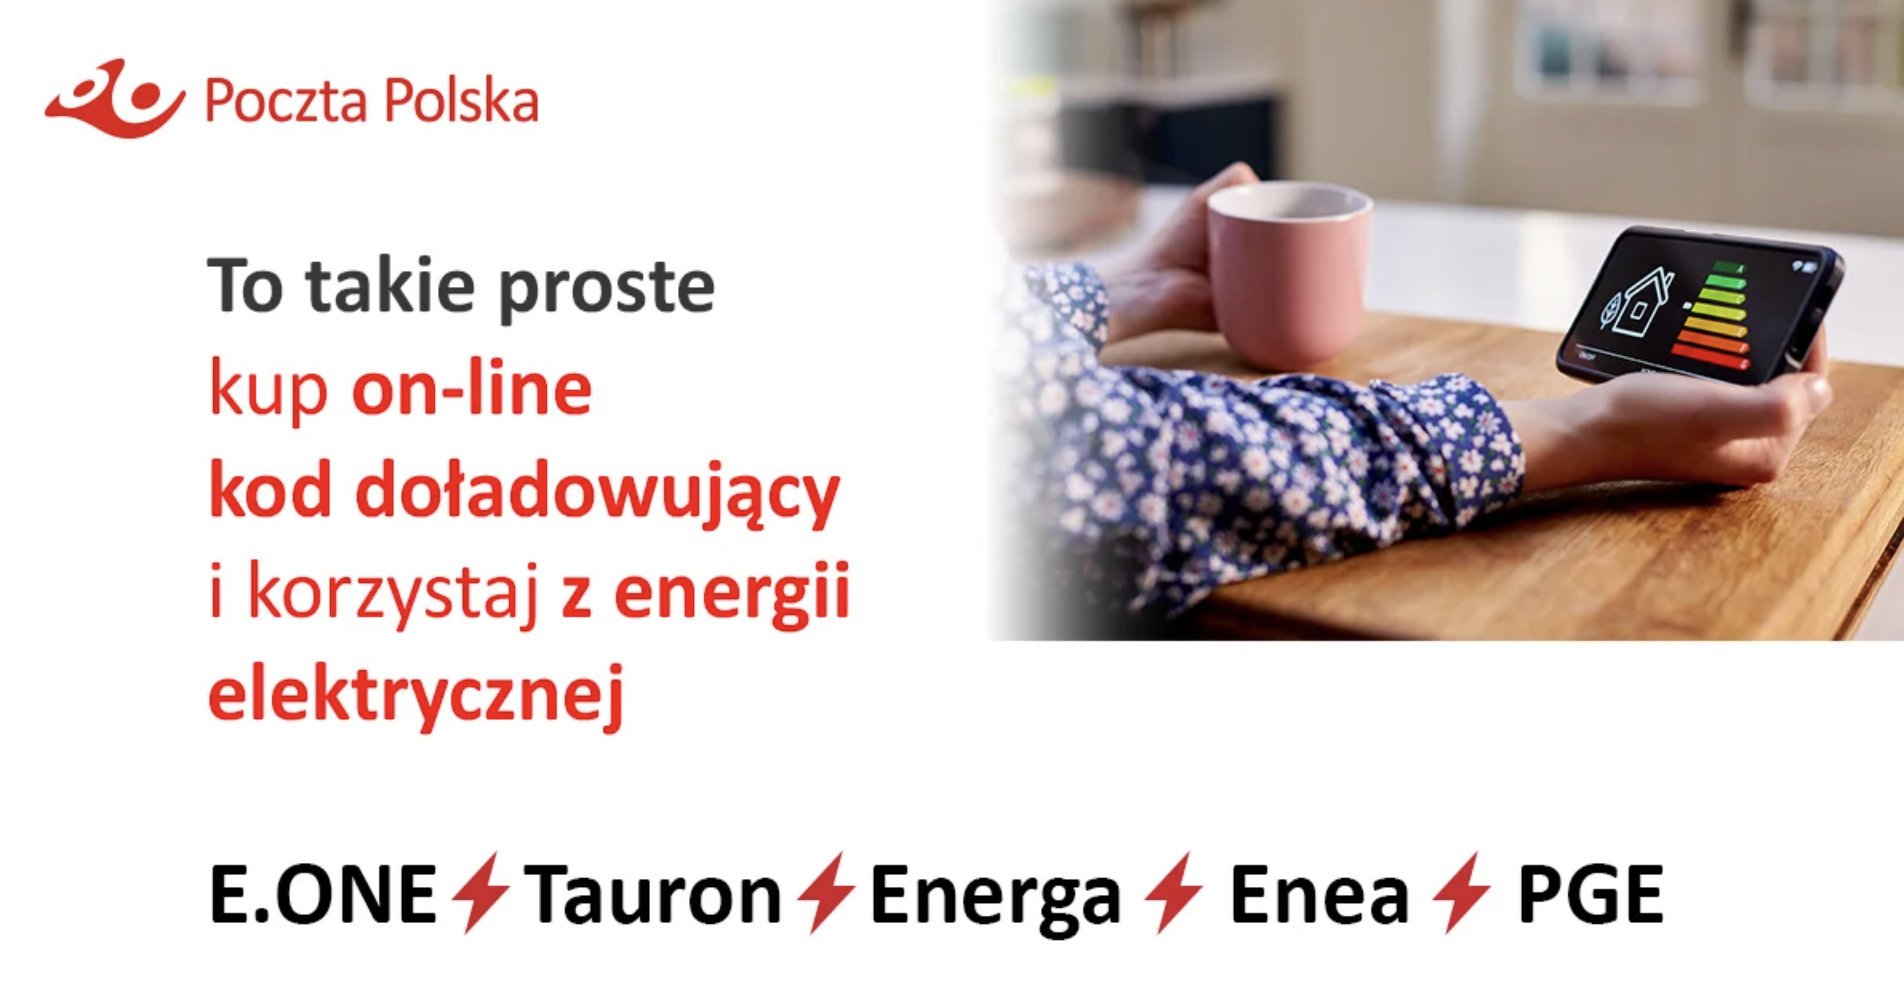 Poczta Polska uruchomiła nowy serwis do zakupu kodu doładowania licznika energii